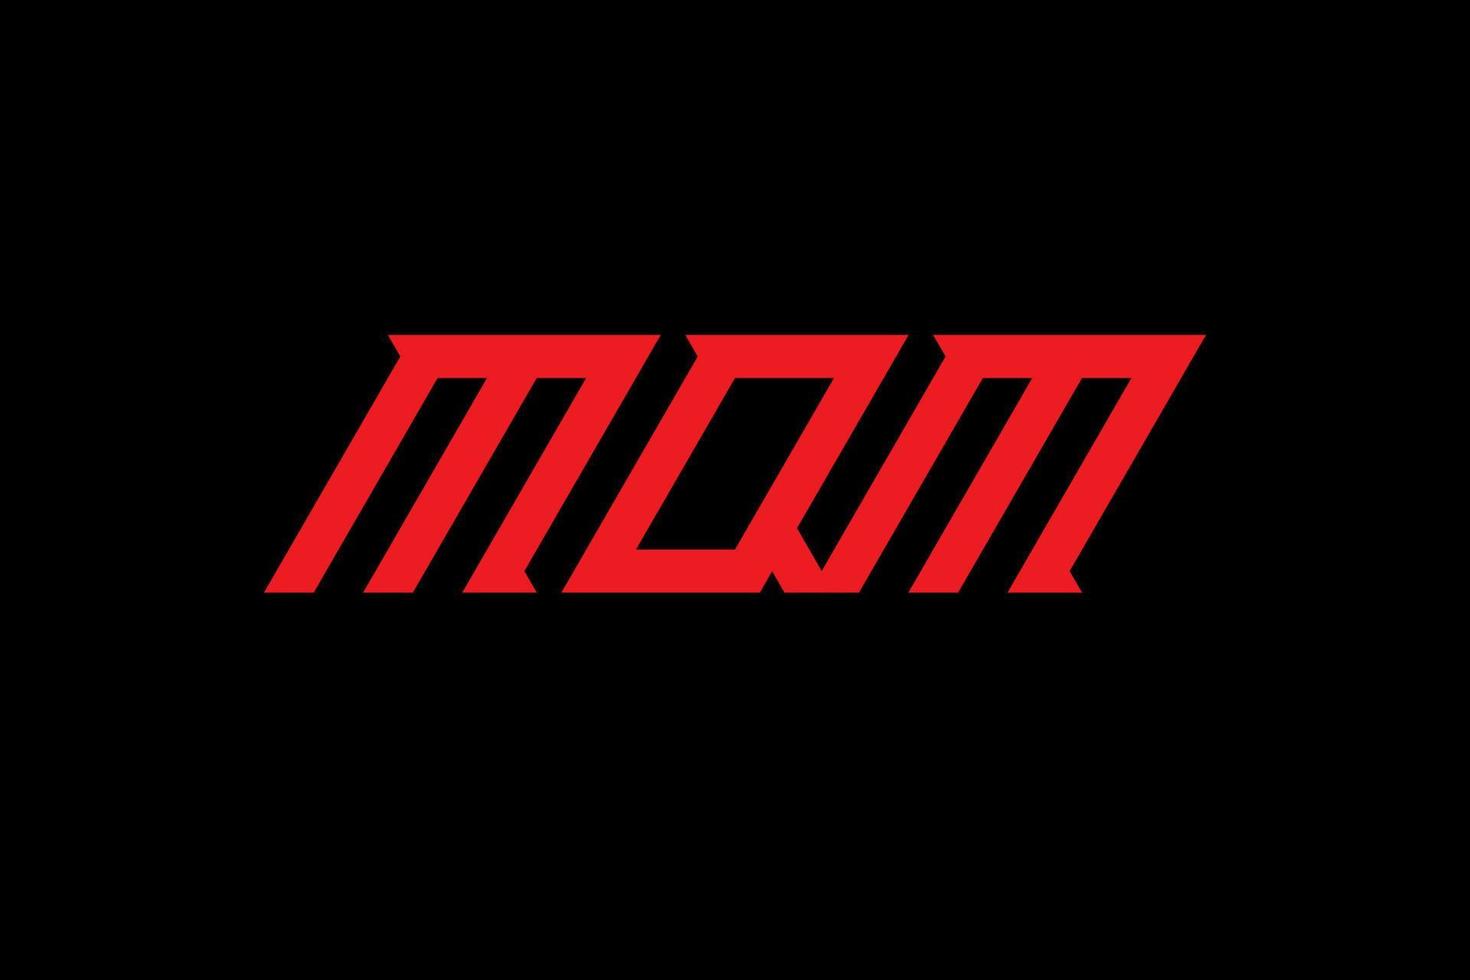 mqm-Buchstaben- und Alphabet-Logo-Design vektor